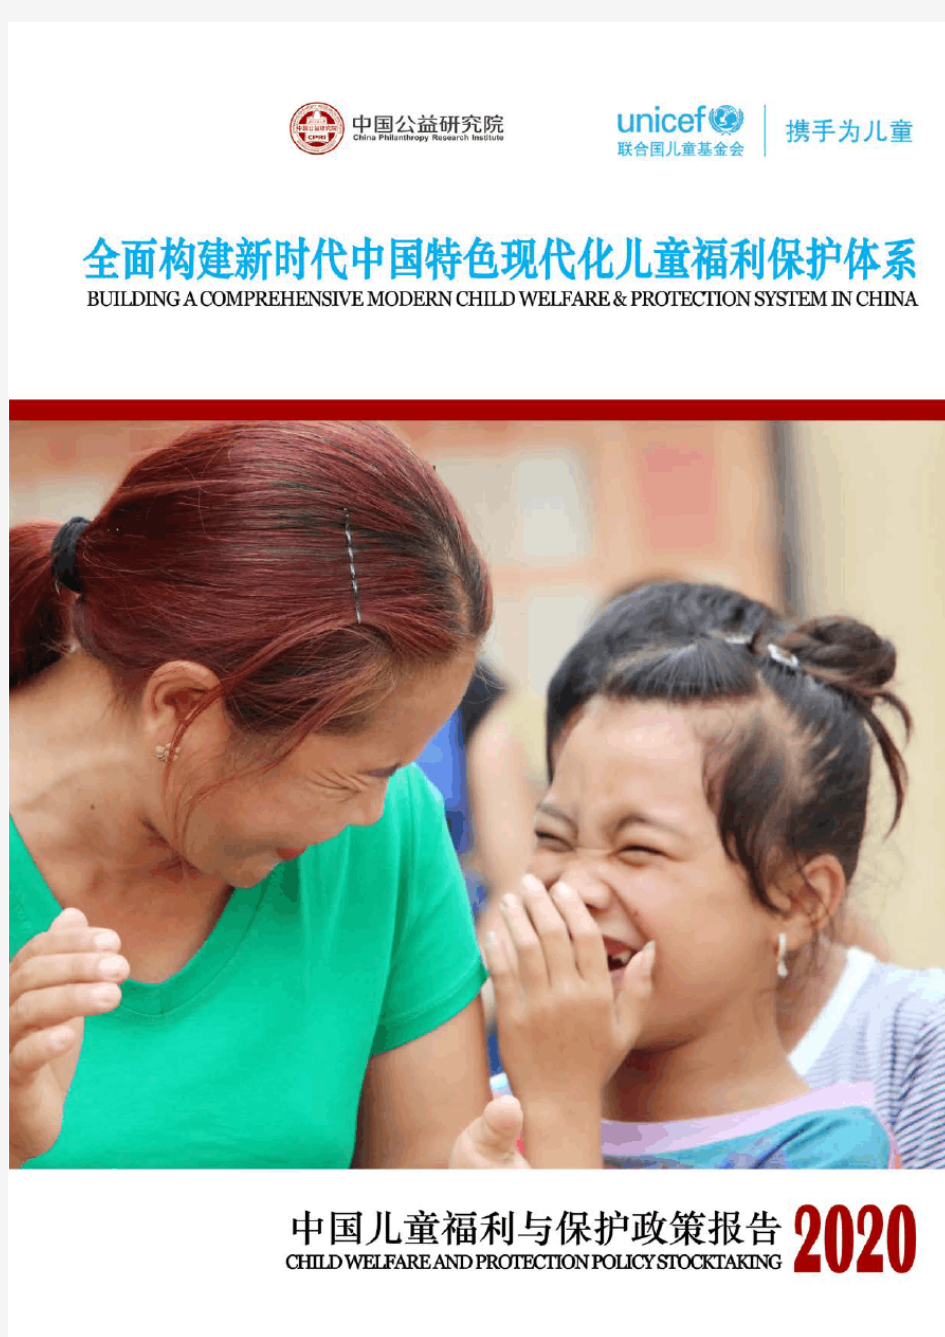 2020-2021年中国儿童福利与保护政策报告